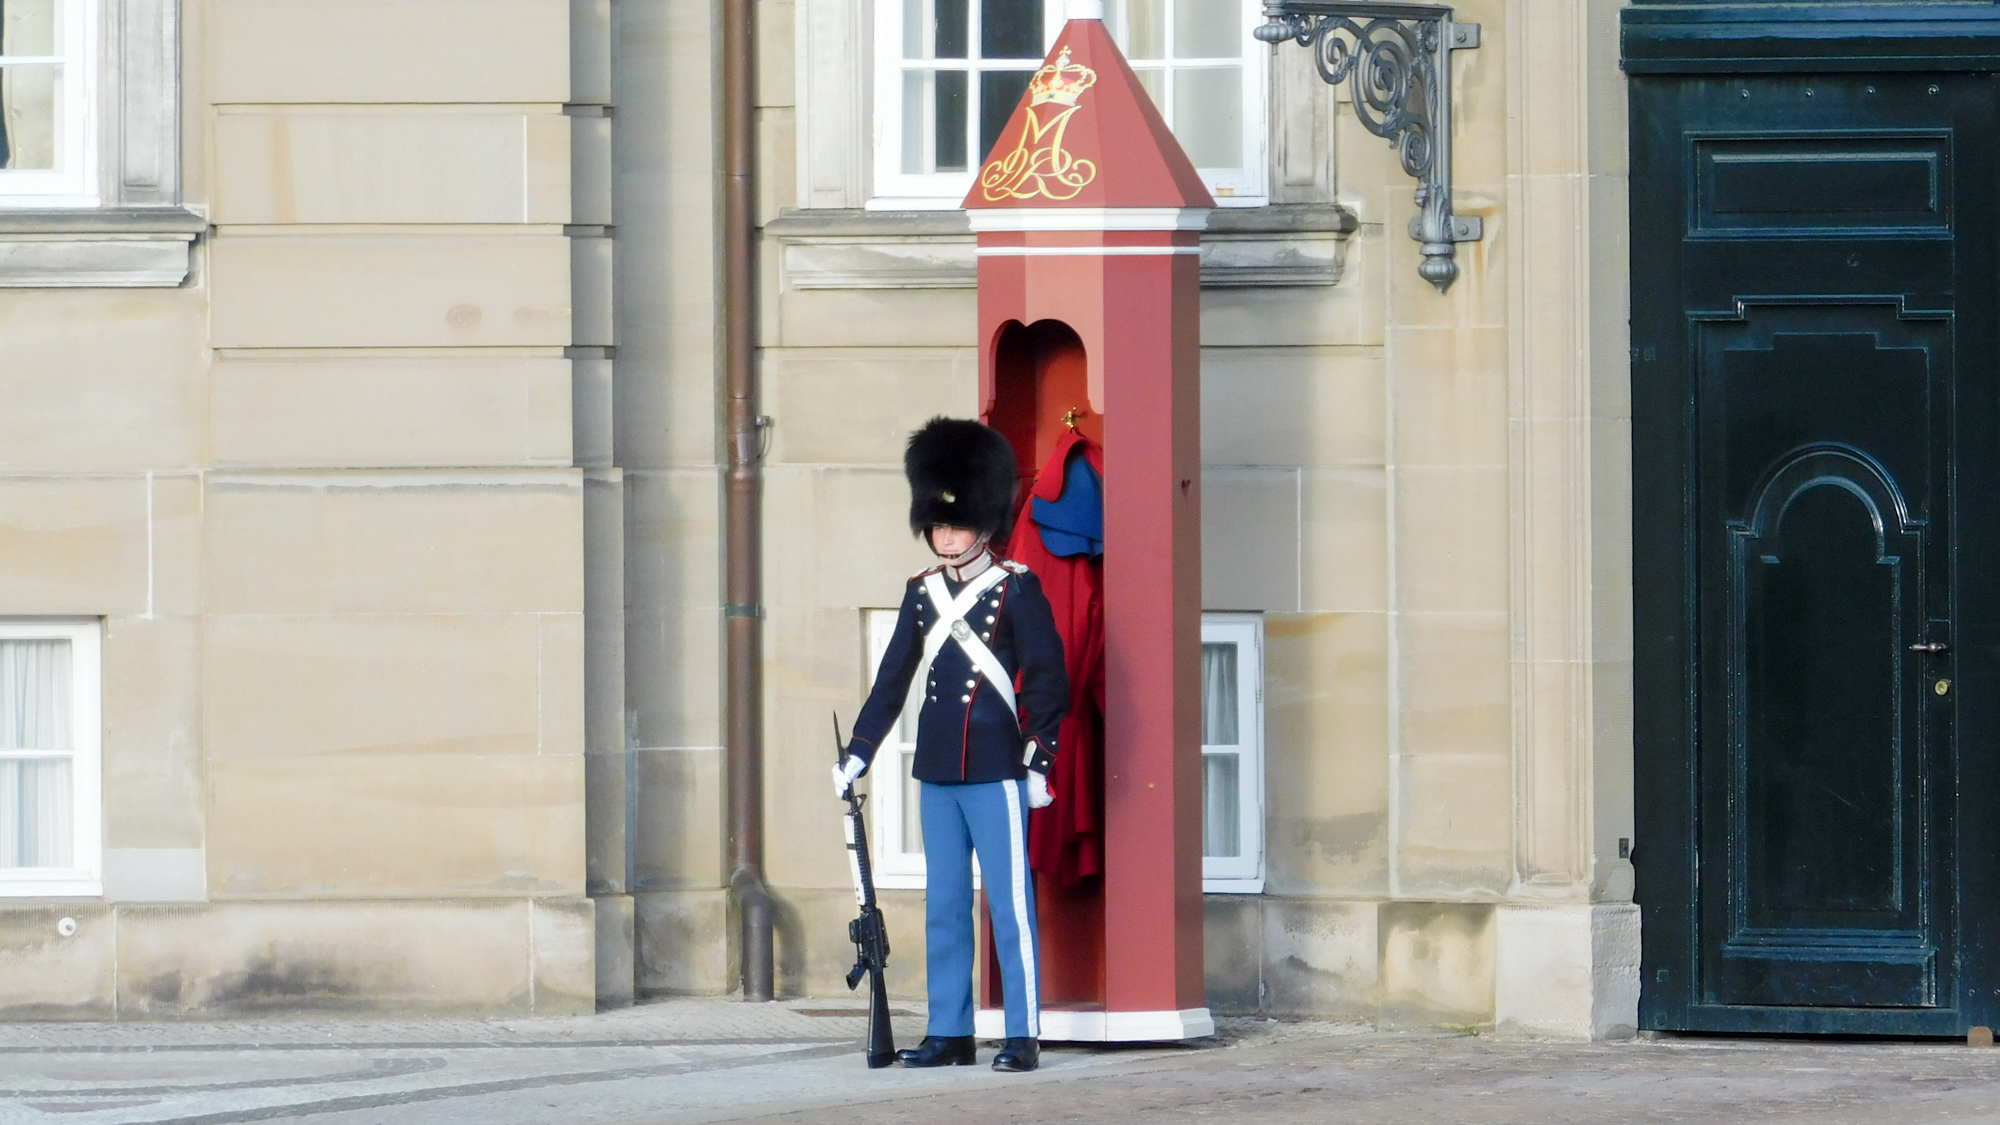 Dánsky vojak stráži Amalienborg. Veľmi podobná uniforma britskej stráži.